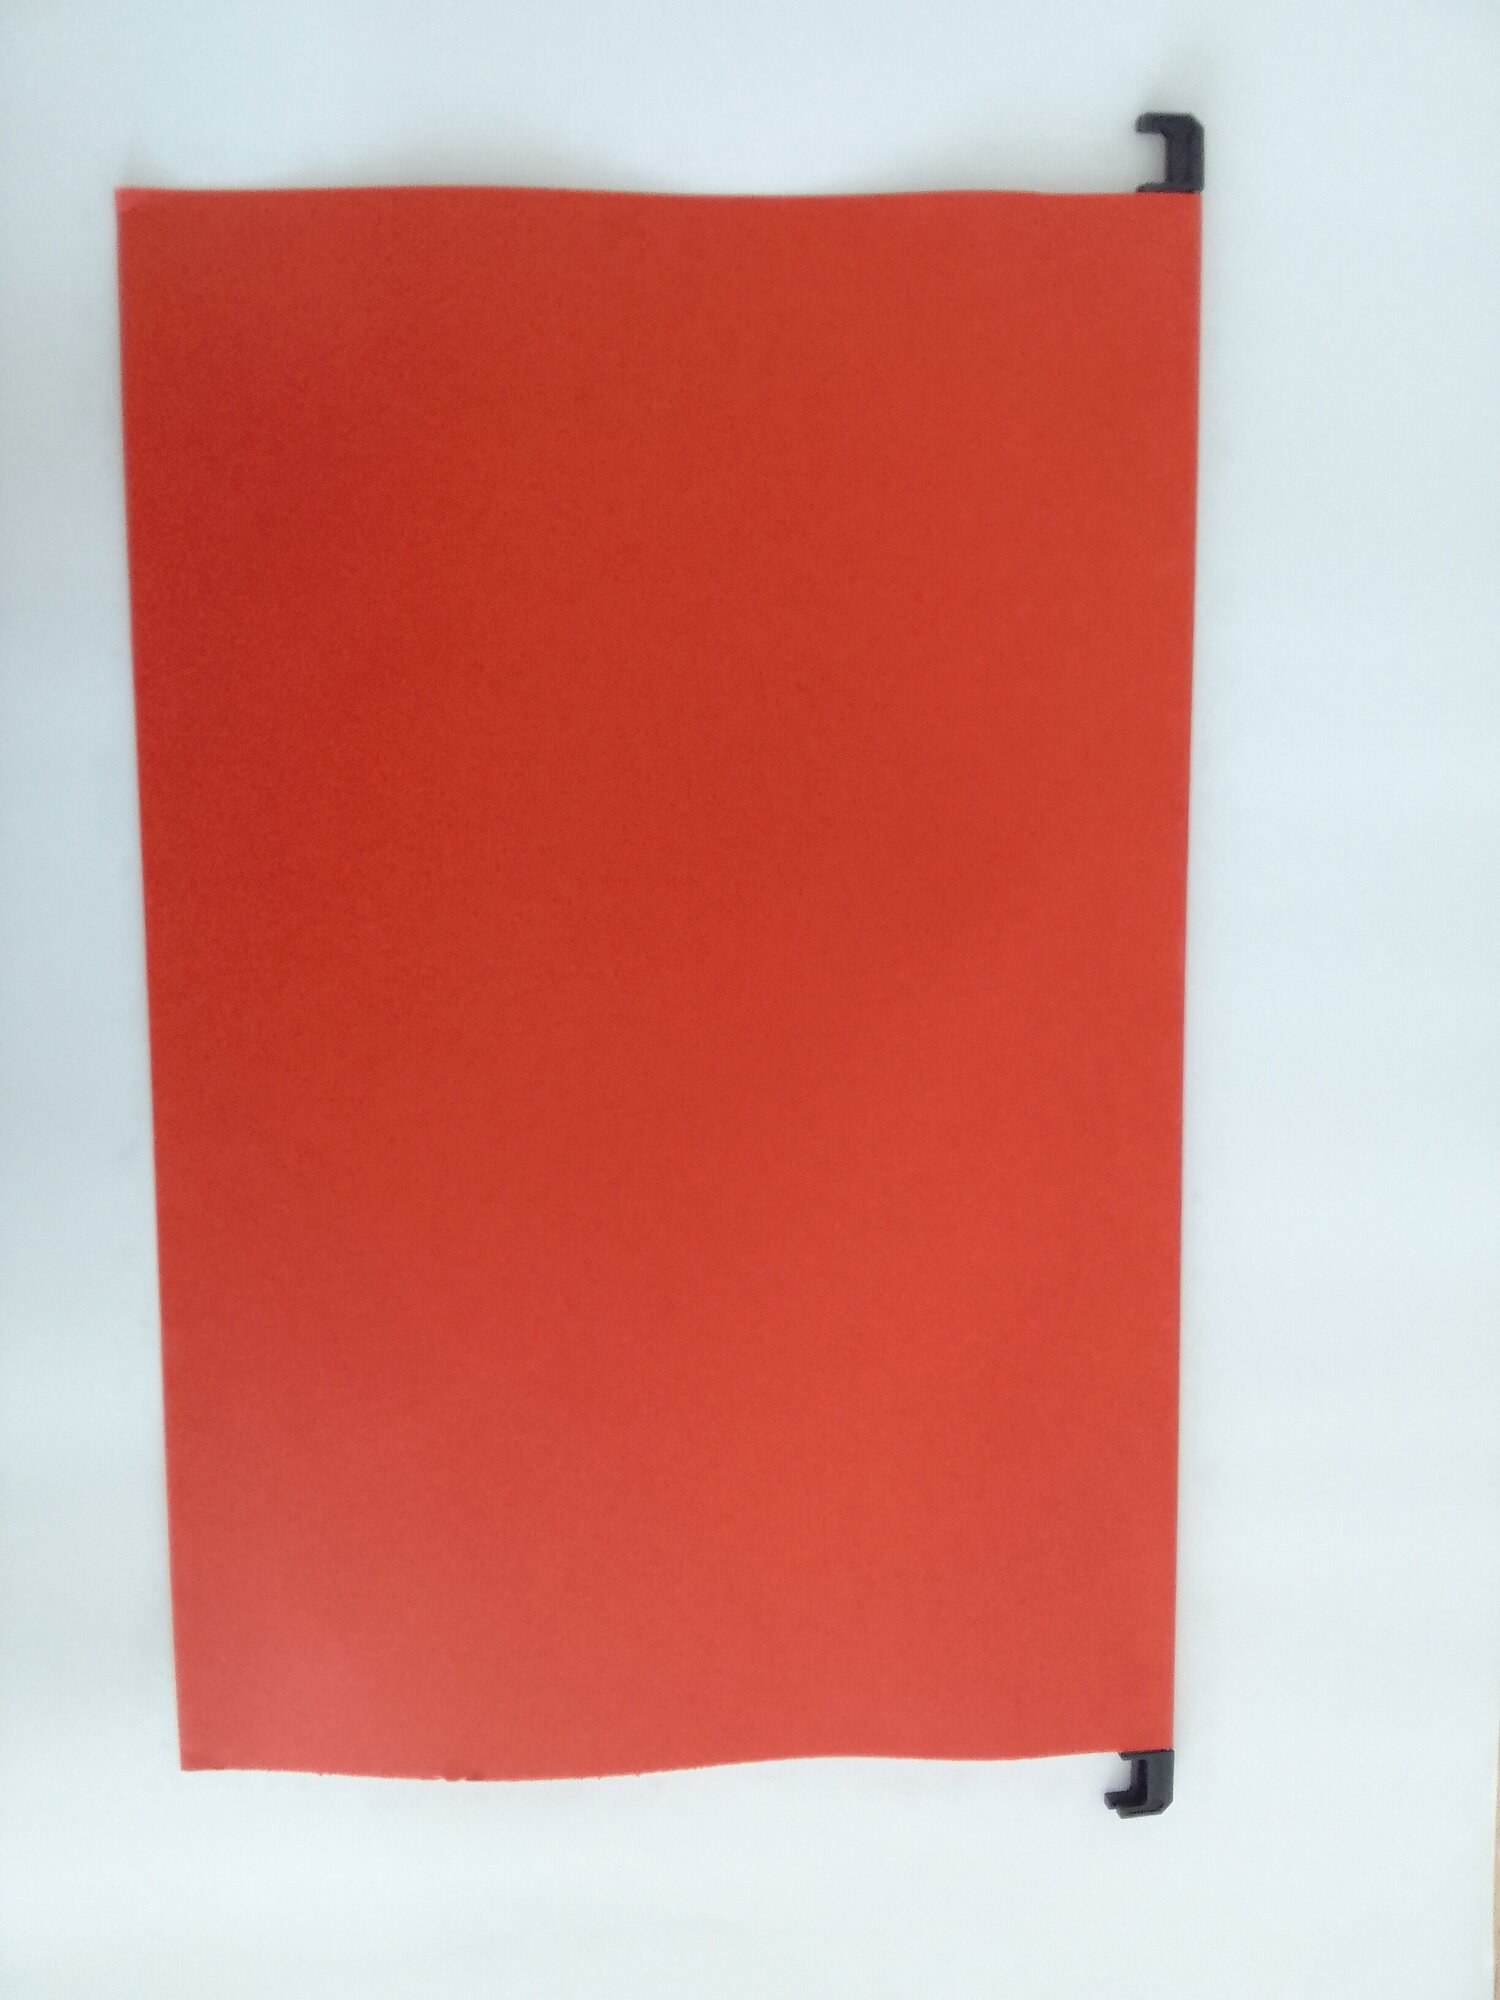 Подвесные папки А4/Foolscap (406х245 мм), до 80 листов, комплект 10 шт, красные, картон